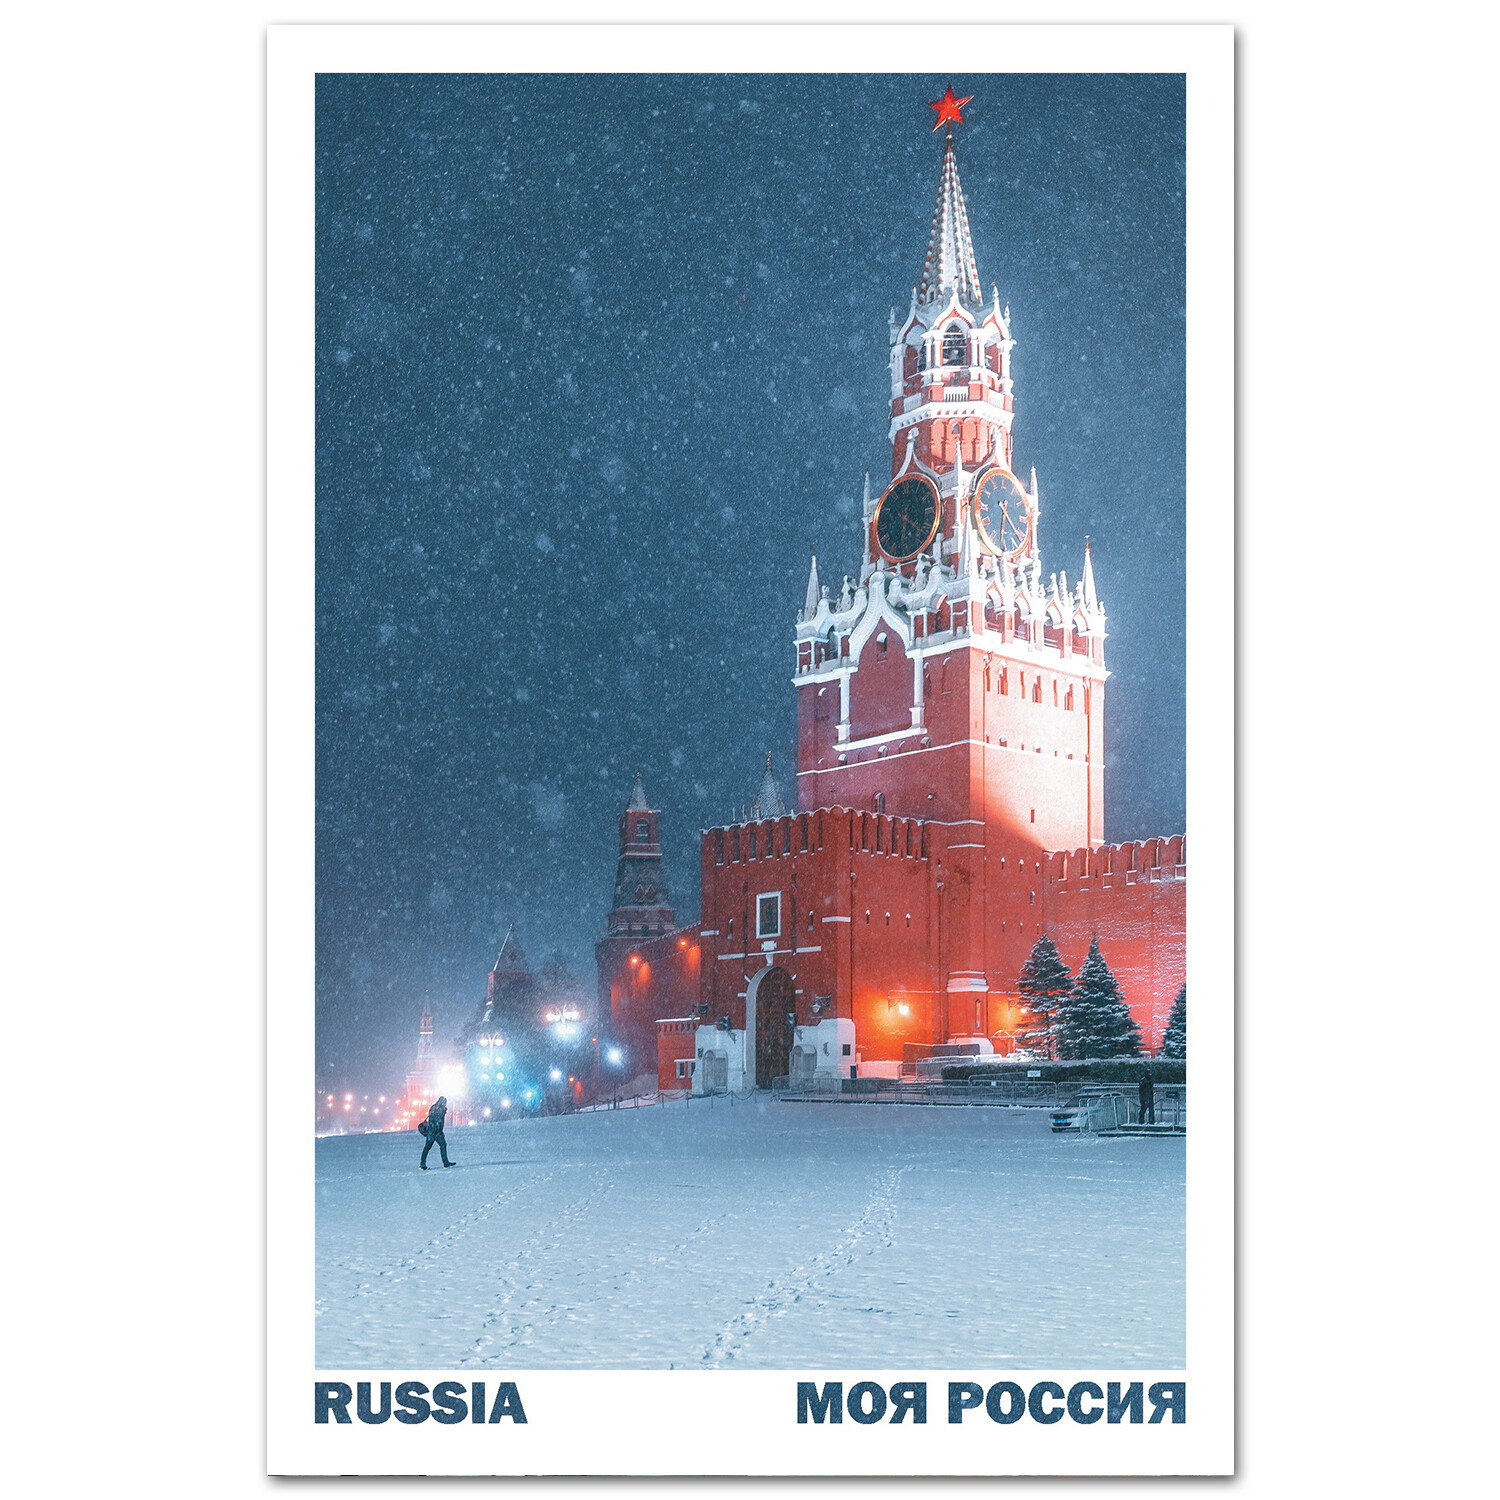 Спасская башня Московского Кремля, Красная площадь